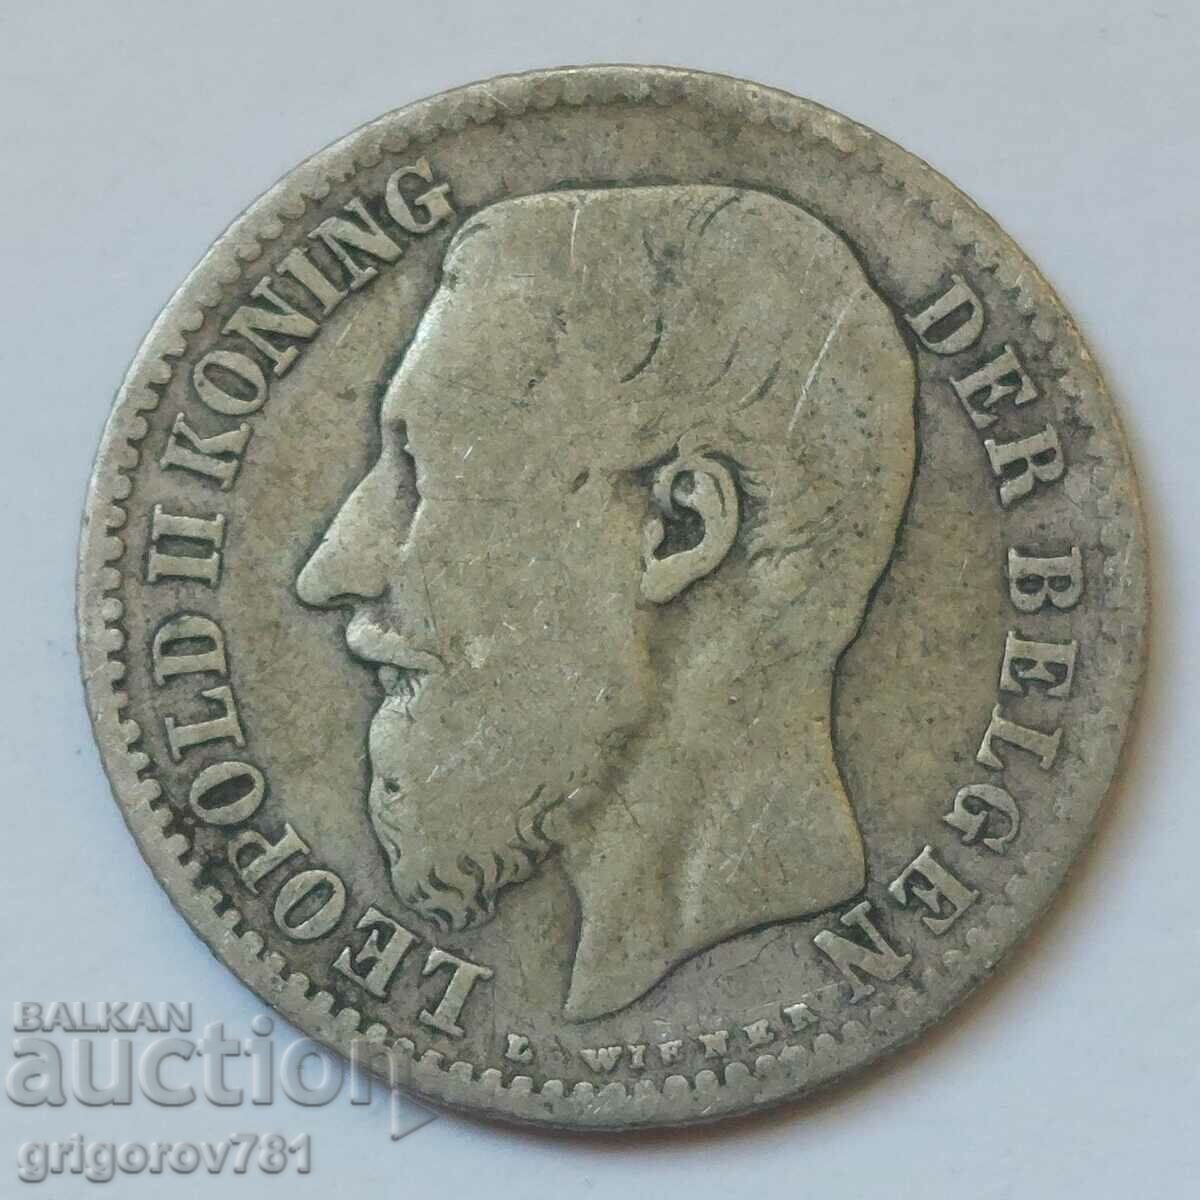 Ασημένιο 1 φράγκου Βέλγιο 1887 - ασημένιο νόμισμα #61